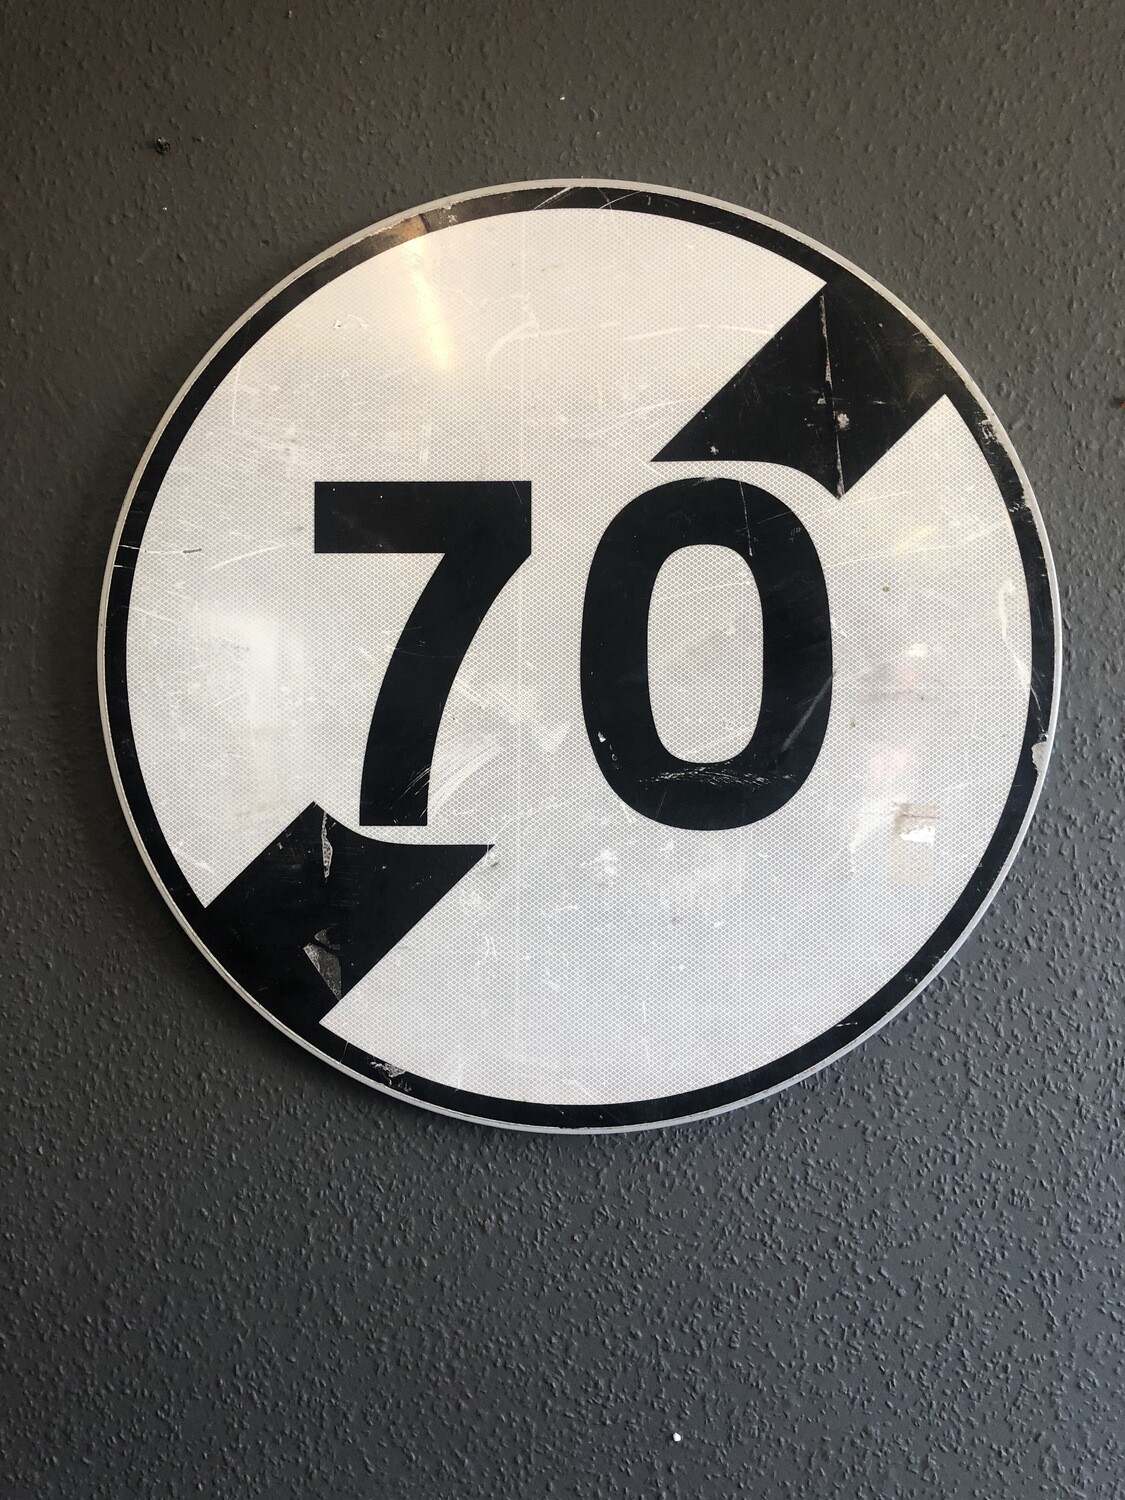 Vintage 70 road sign